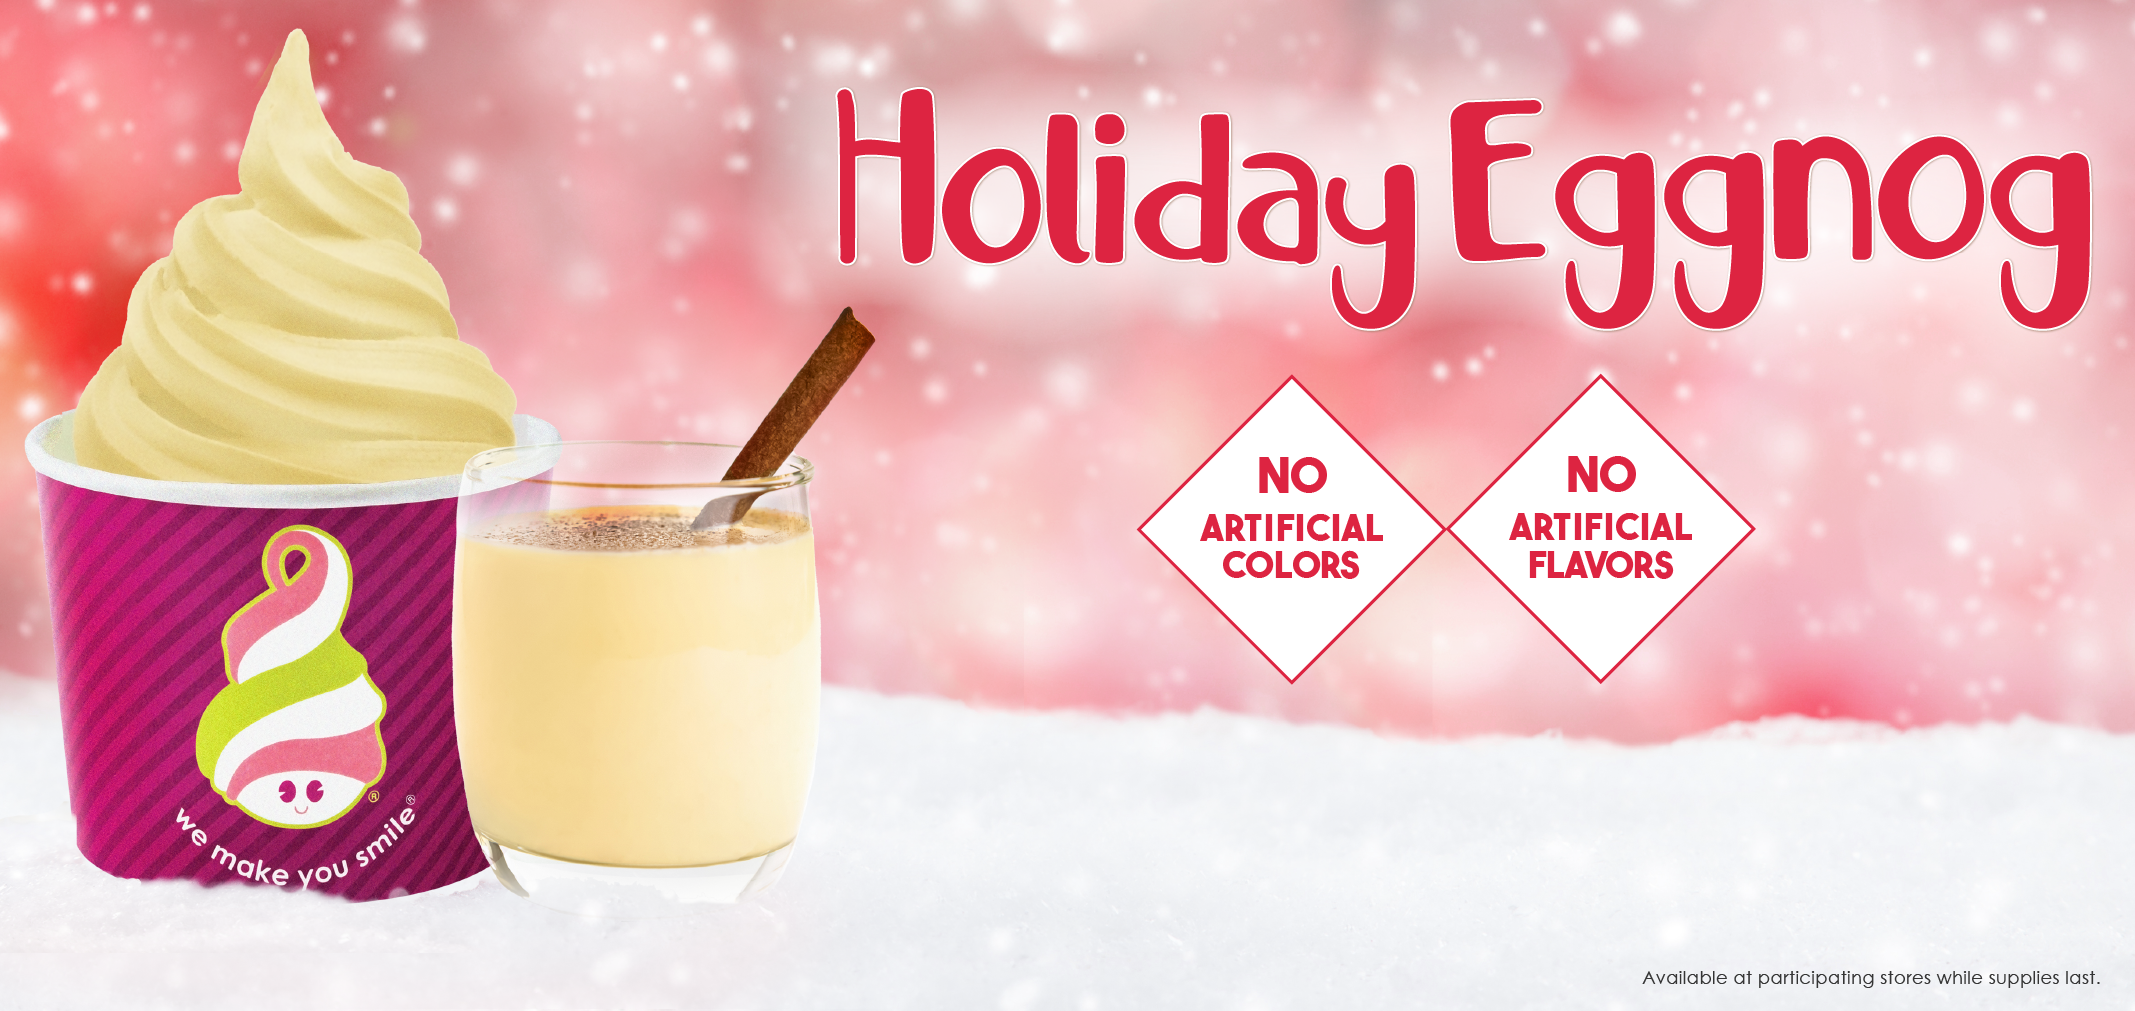 holiday eggnog label image